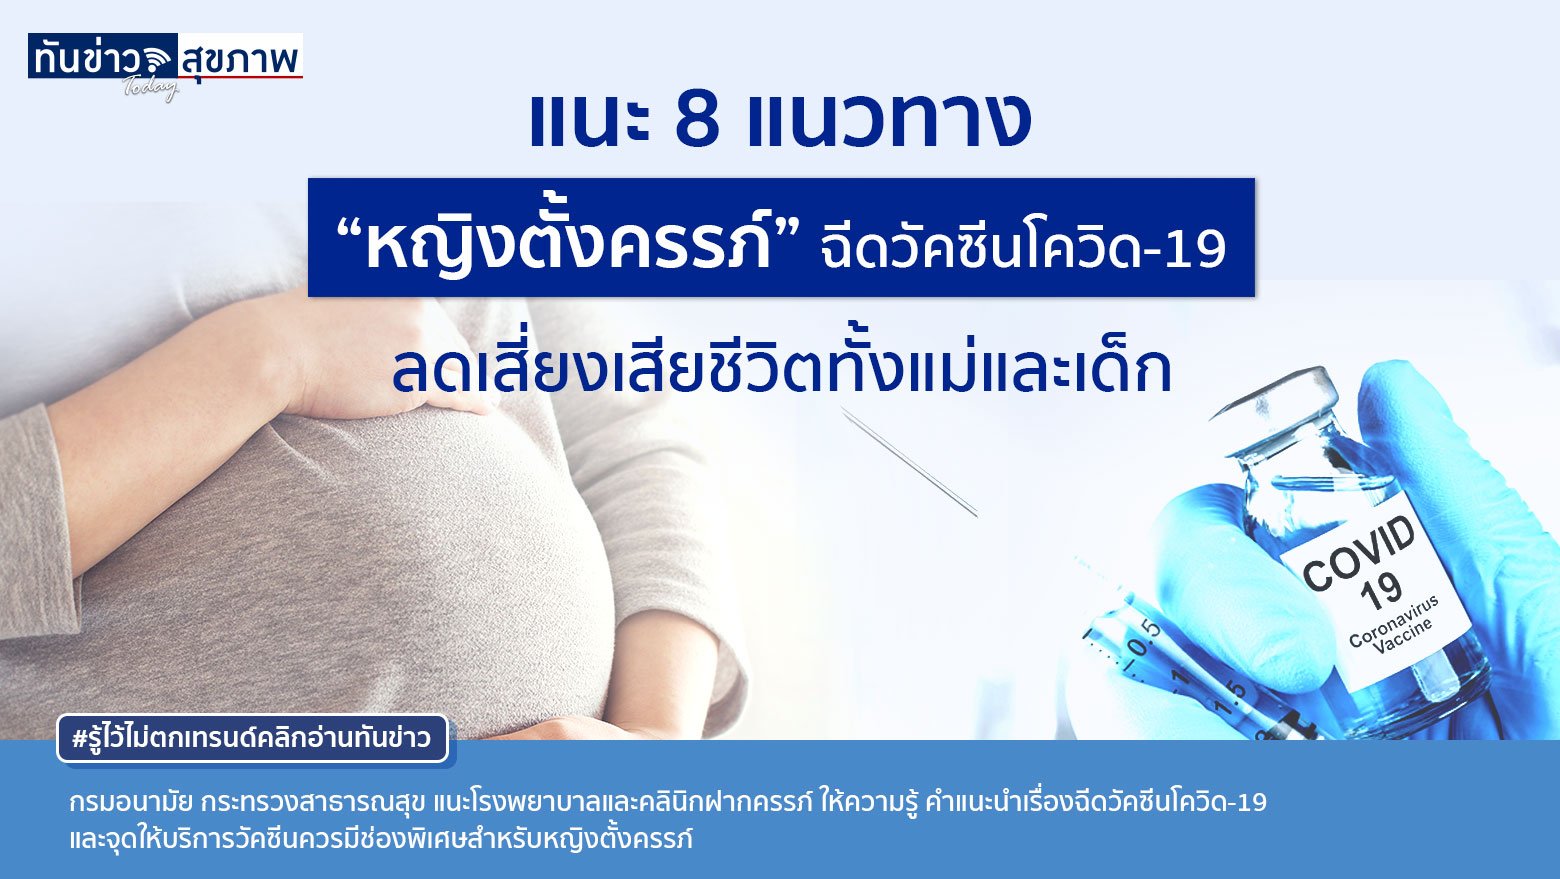 กรมอนามัย แนะ 8 แนวทาง “หญิงตั้งครรภ์” ฉีดวัคซีนโควิด-19 ลดเสี่ยงเสียชีวิตทั้งแม่และเด็ก